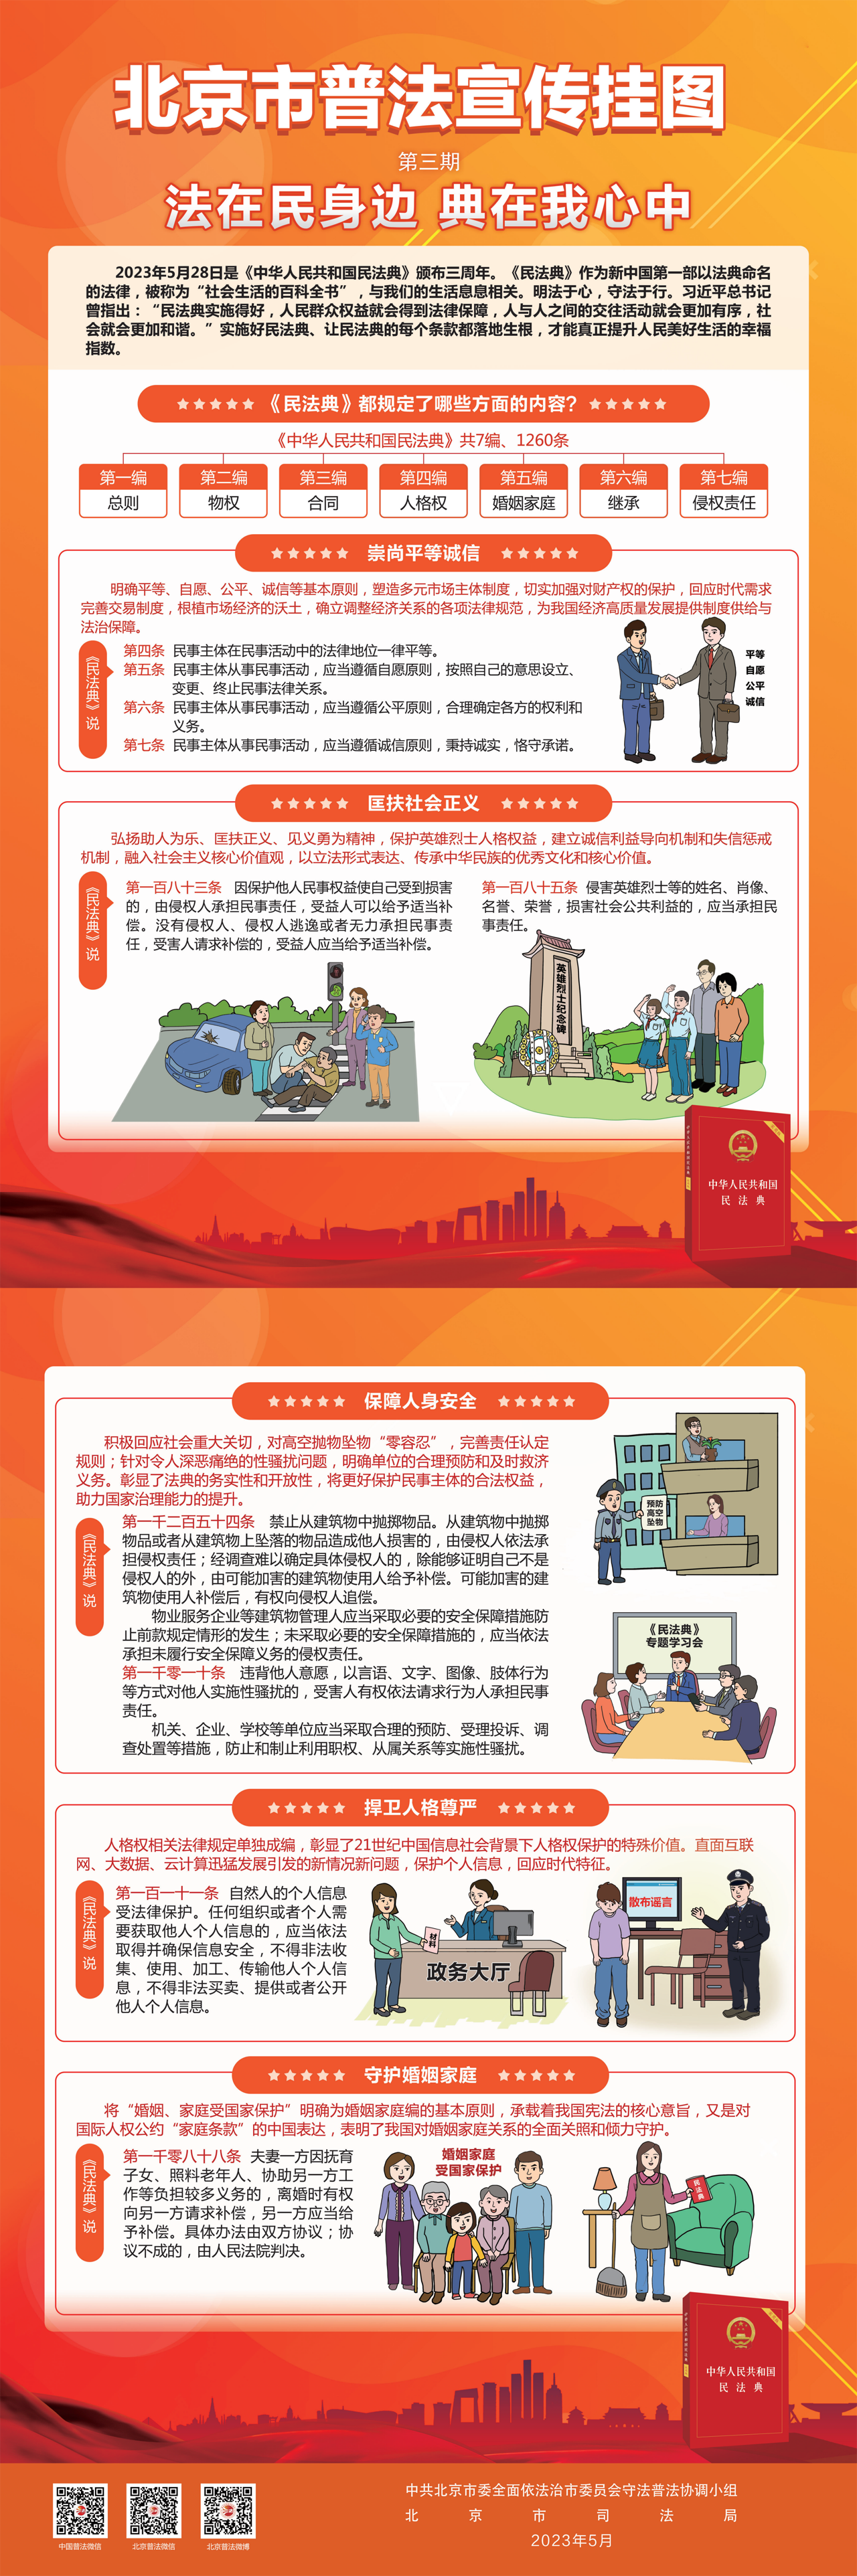 北京市普法宣传挂图第三期